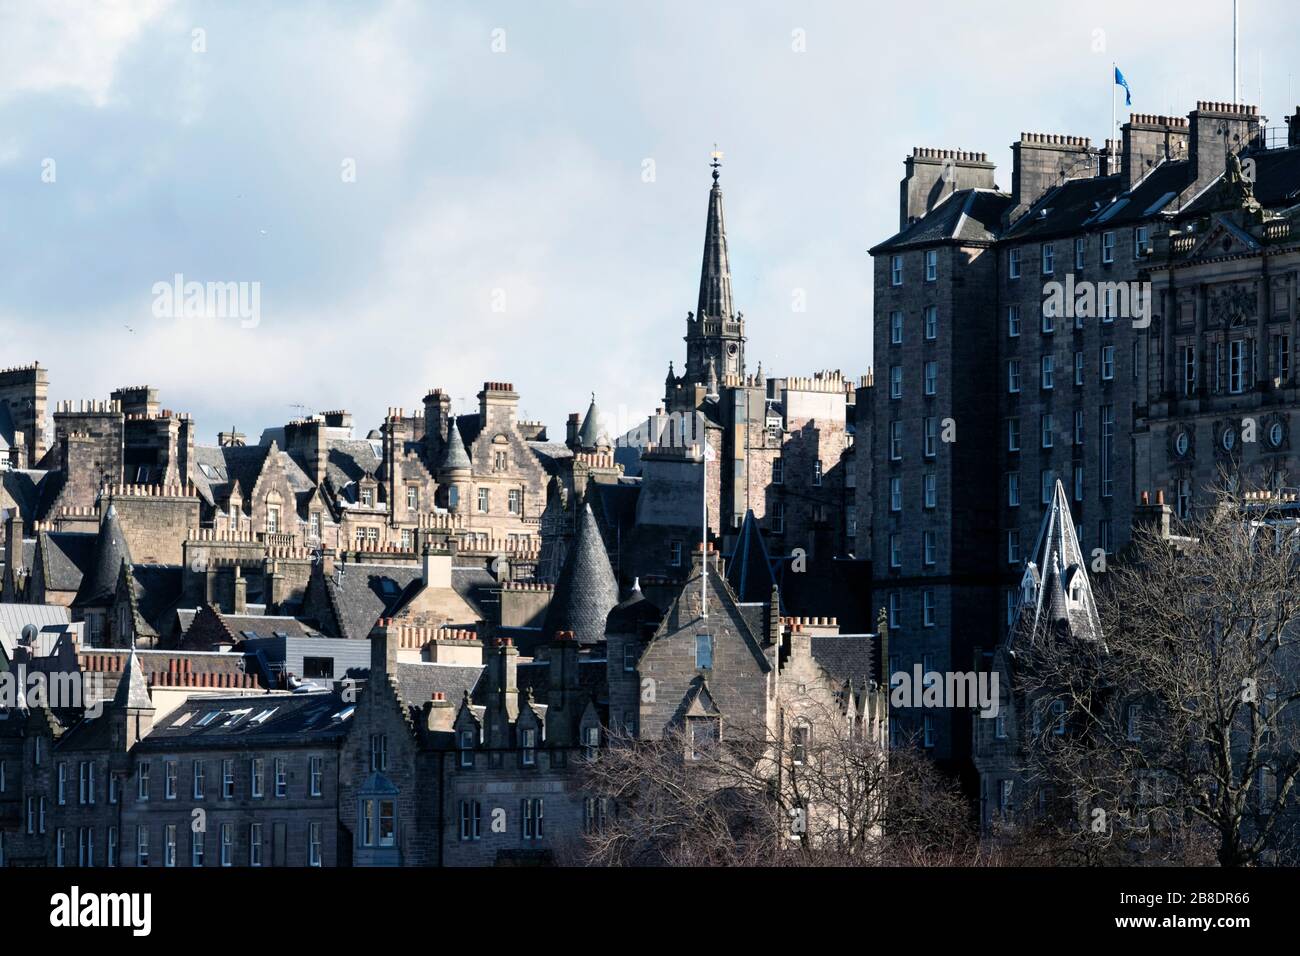 Blick auf die Altstadt von Edinburgh und das Gebäude der City Chambers. Stockfoto